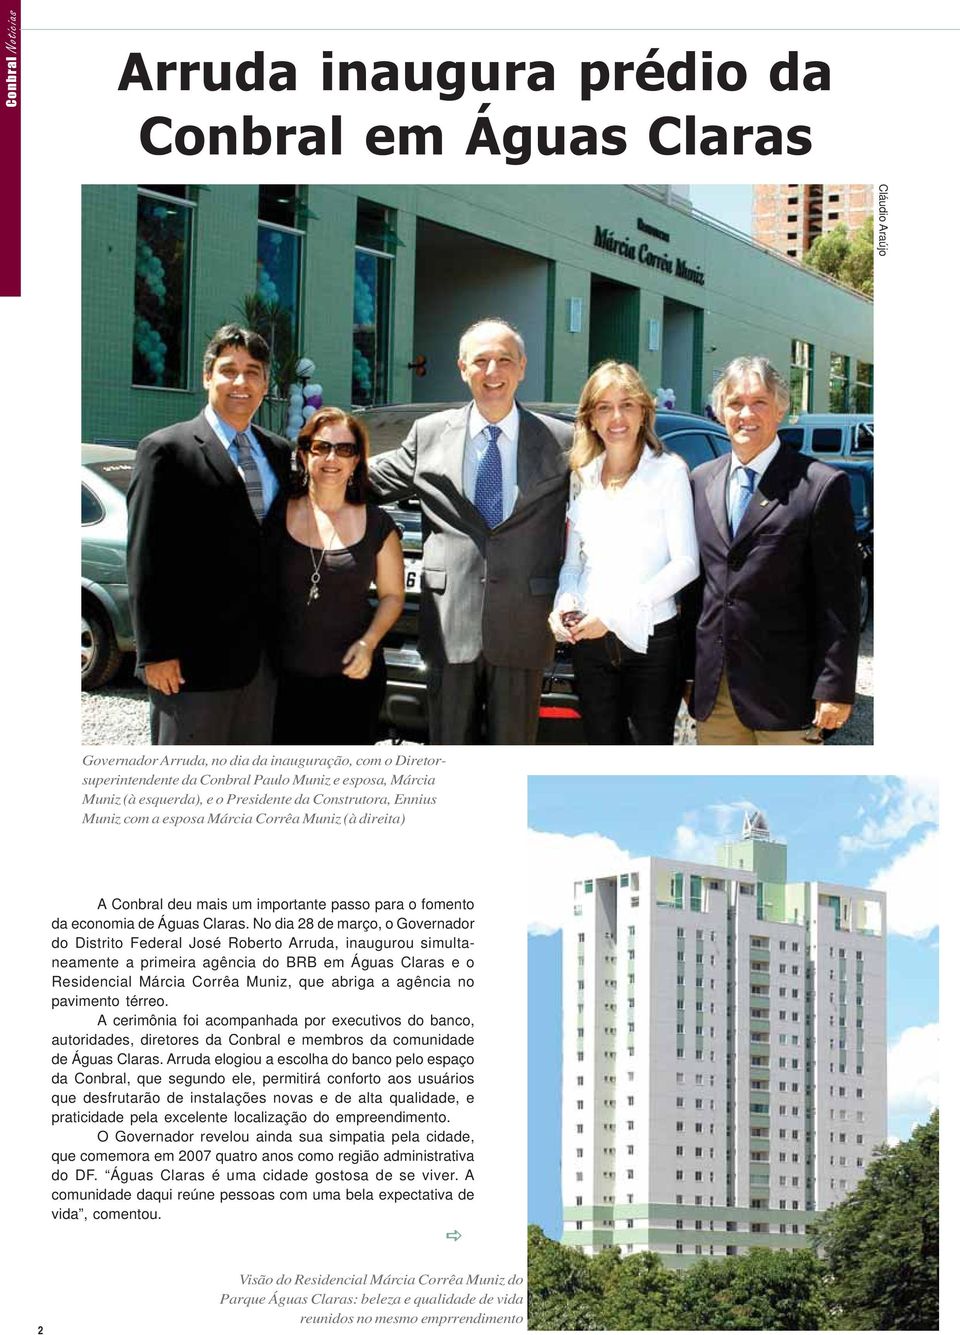 No dia 28 de março, o Governador do Distrito Federal José Roberto Arruda, inaugurou simultaneamente a primeira agência do BRB em Águas Claras e o Residencial Márcia Corrêa Muniz, que abriga a agência